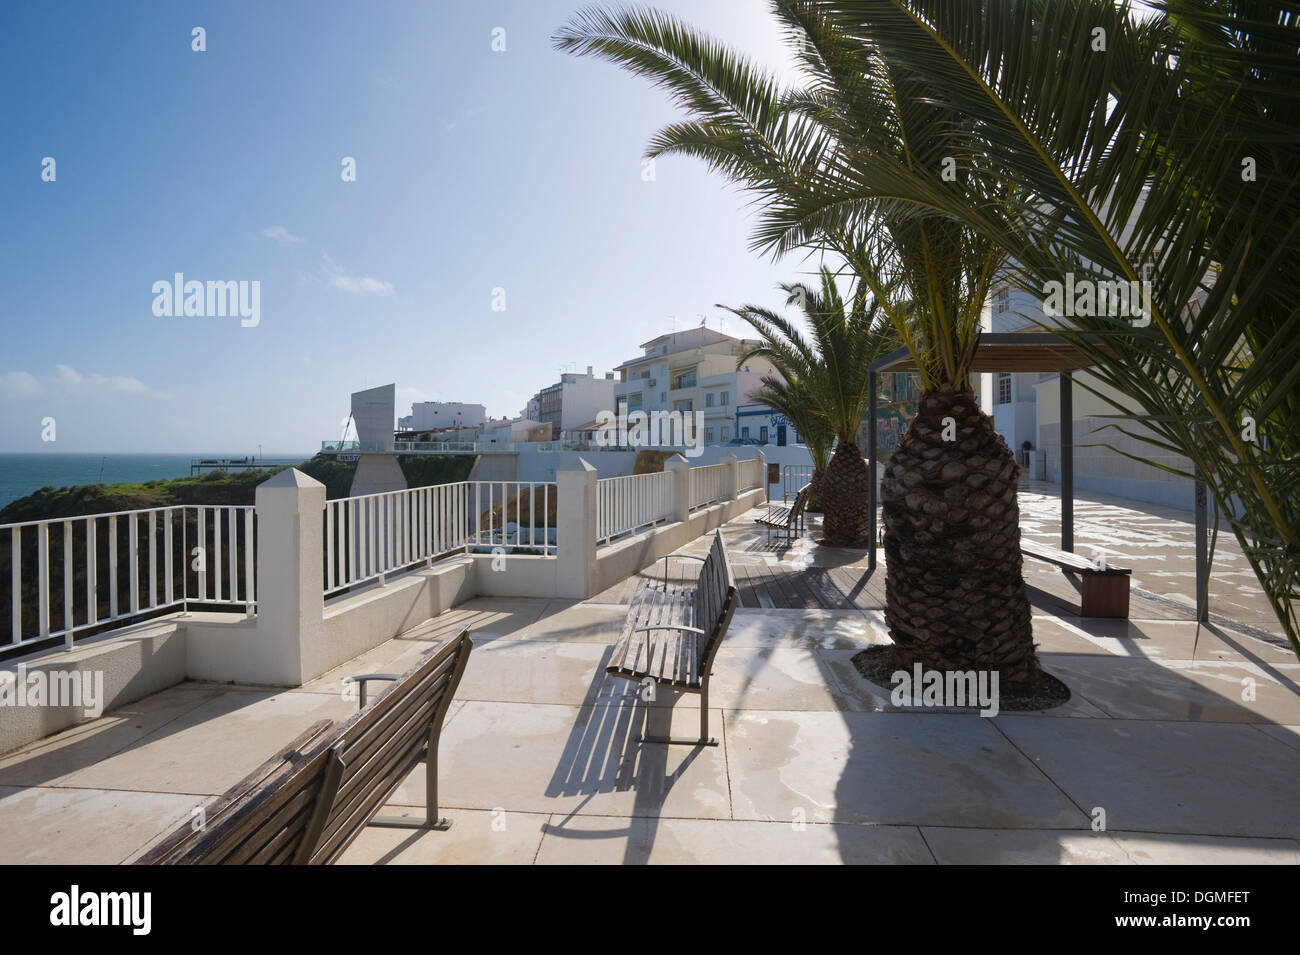 Cityscape at Area de Lazer, Albufeira, Algarve, Portugal, Europe Stock Photo